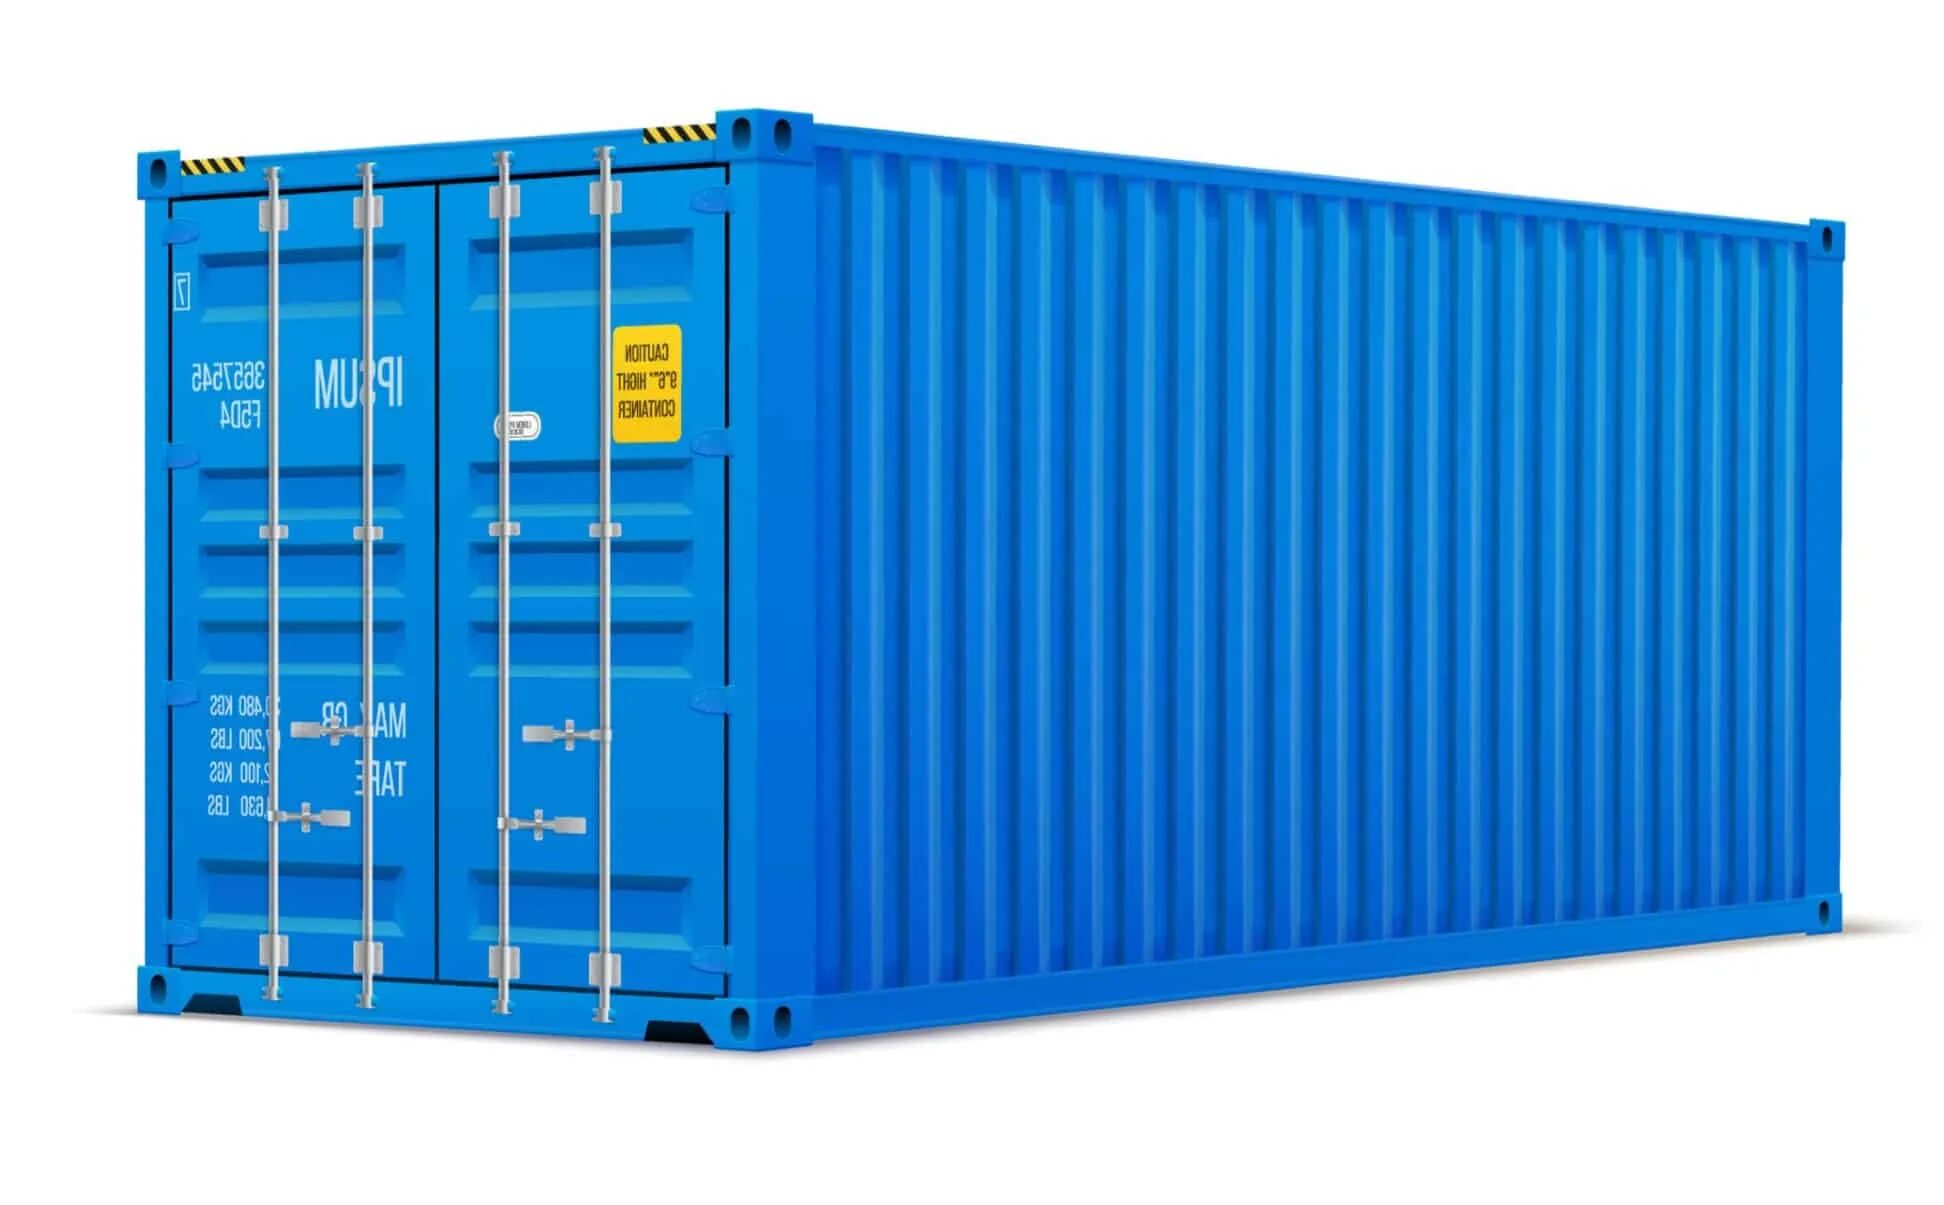 Морские контейнеры россия. Контейнер 20dc новый. 40-Ка футовый High Cube контейнер увеличенной вместимости. Морской контейнер 40 футов HC, DC. Контейнер 20dc hlxu3340109.